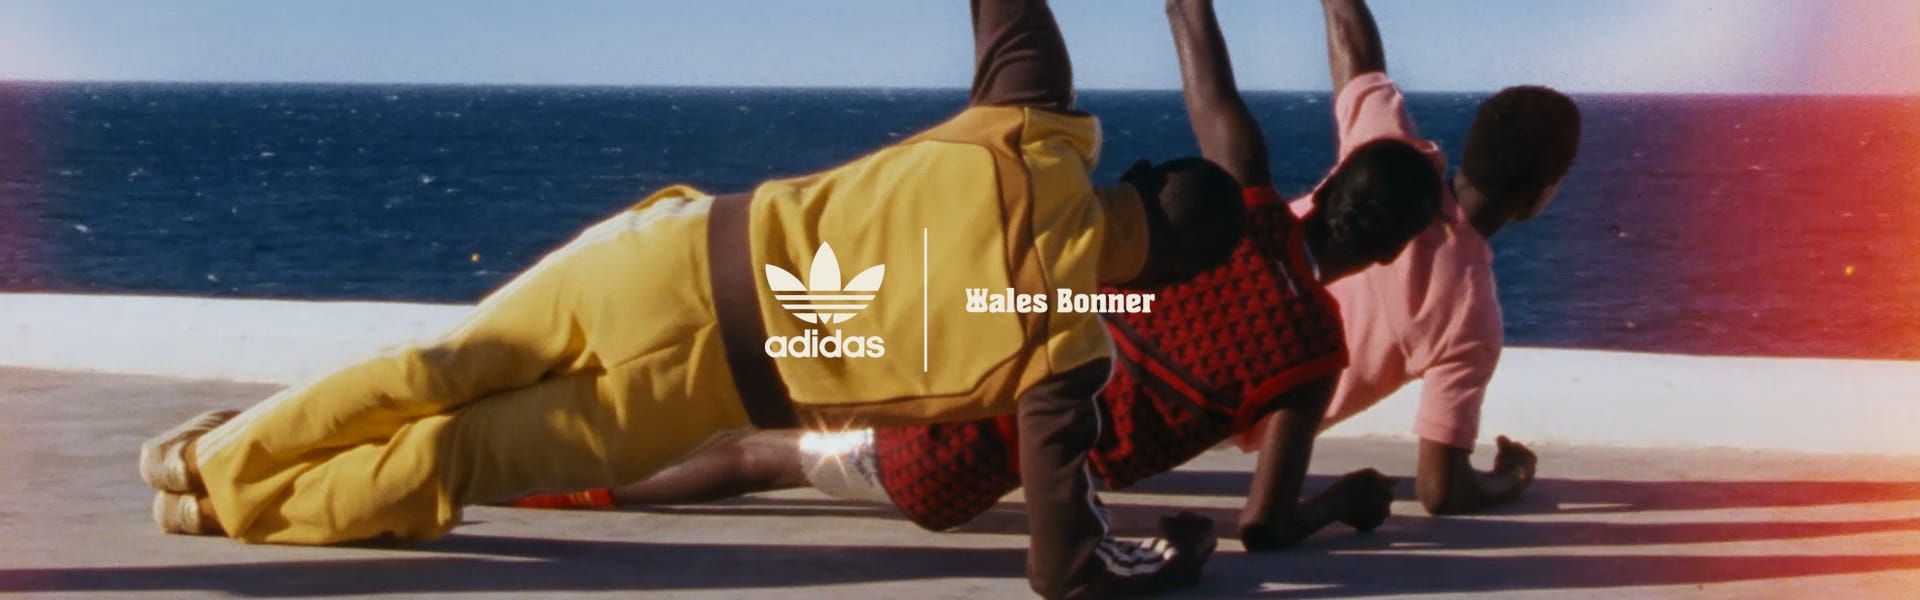 ADIDAS ORIGINALS BY WALES BONNER | adidas US